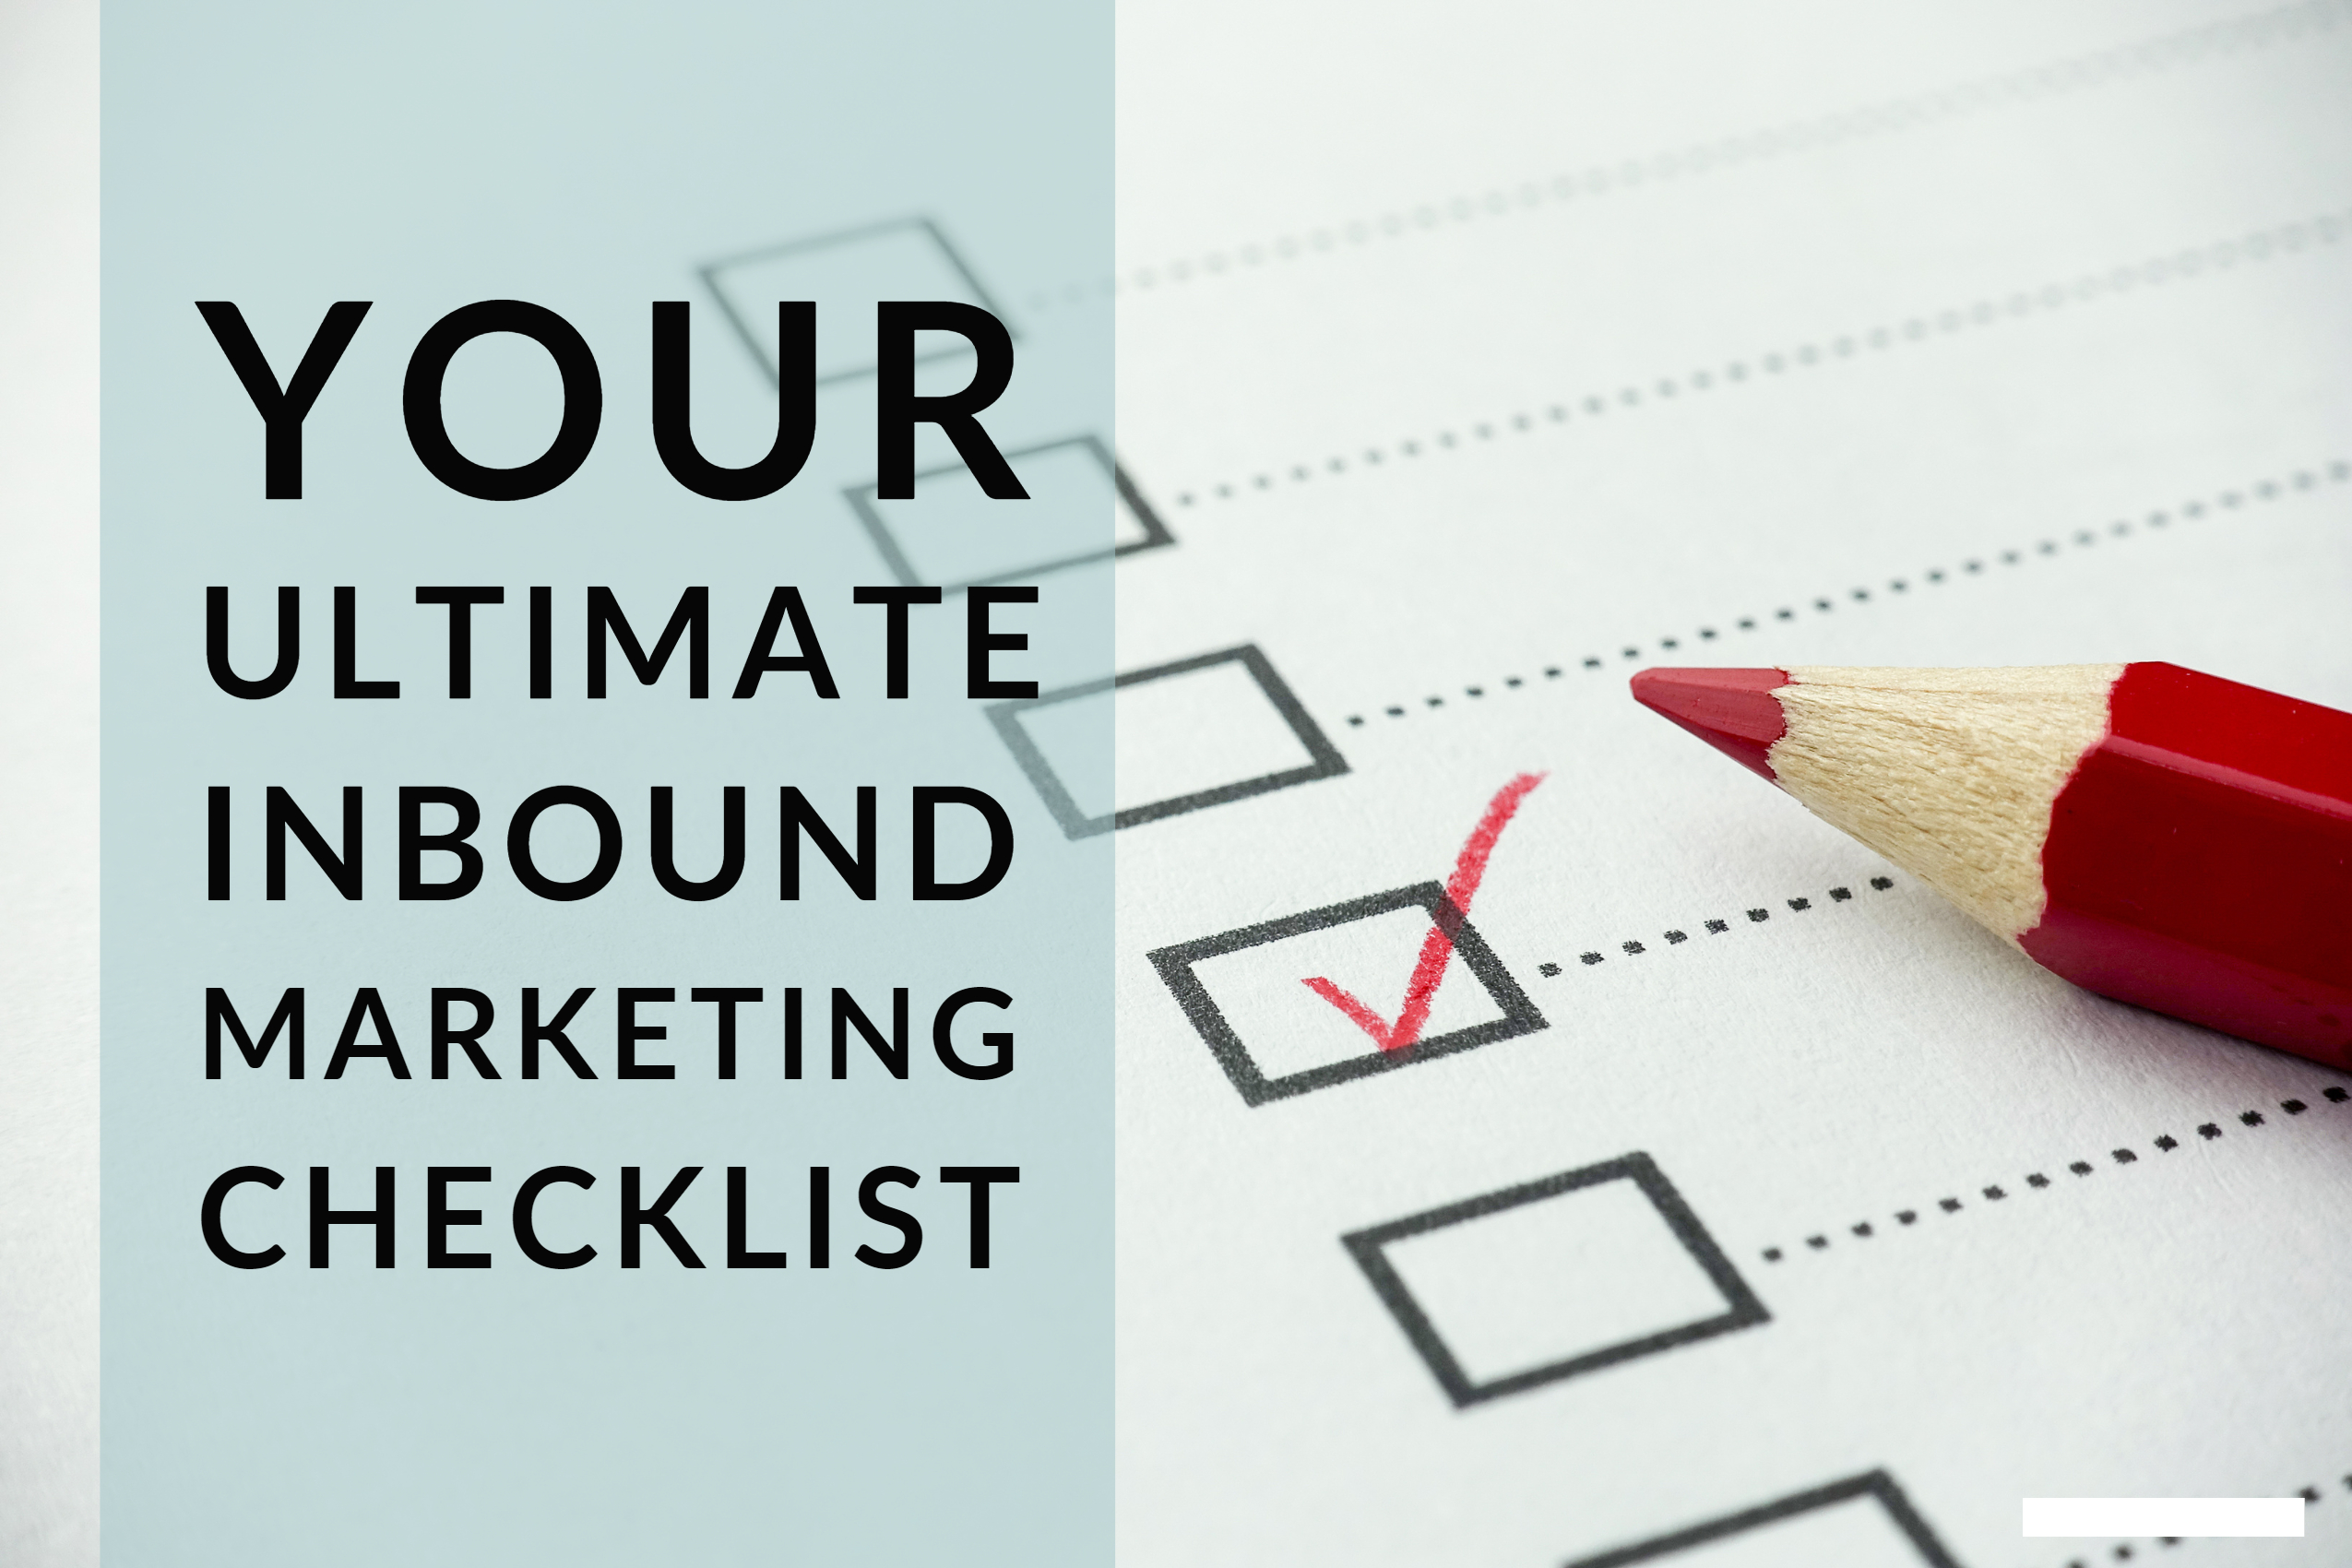 Your Ultimate Inbound Marketing Checklist